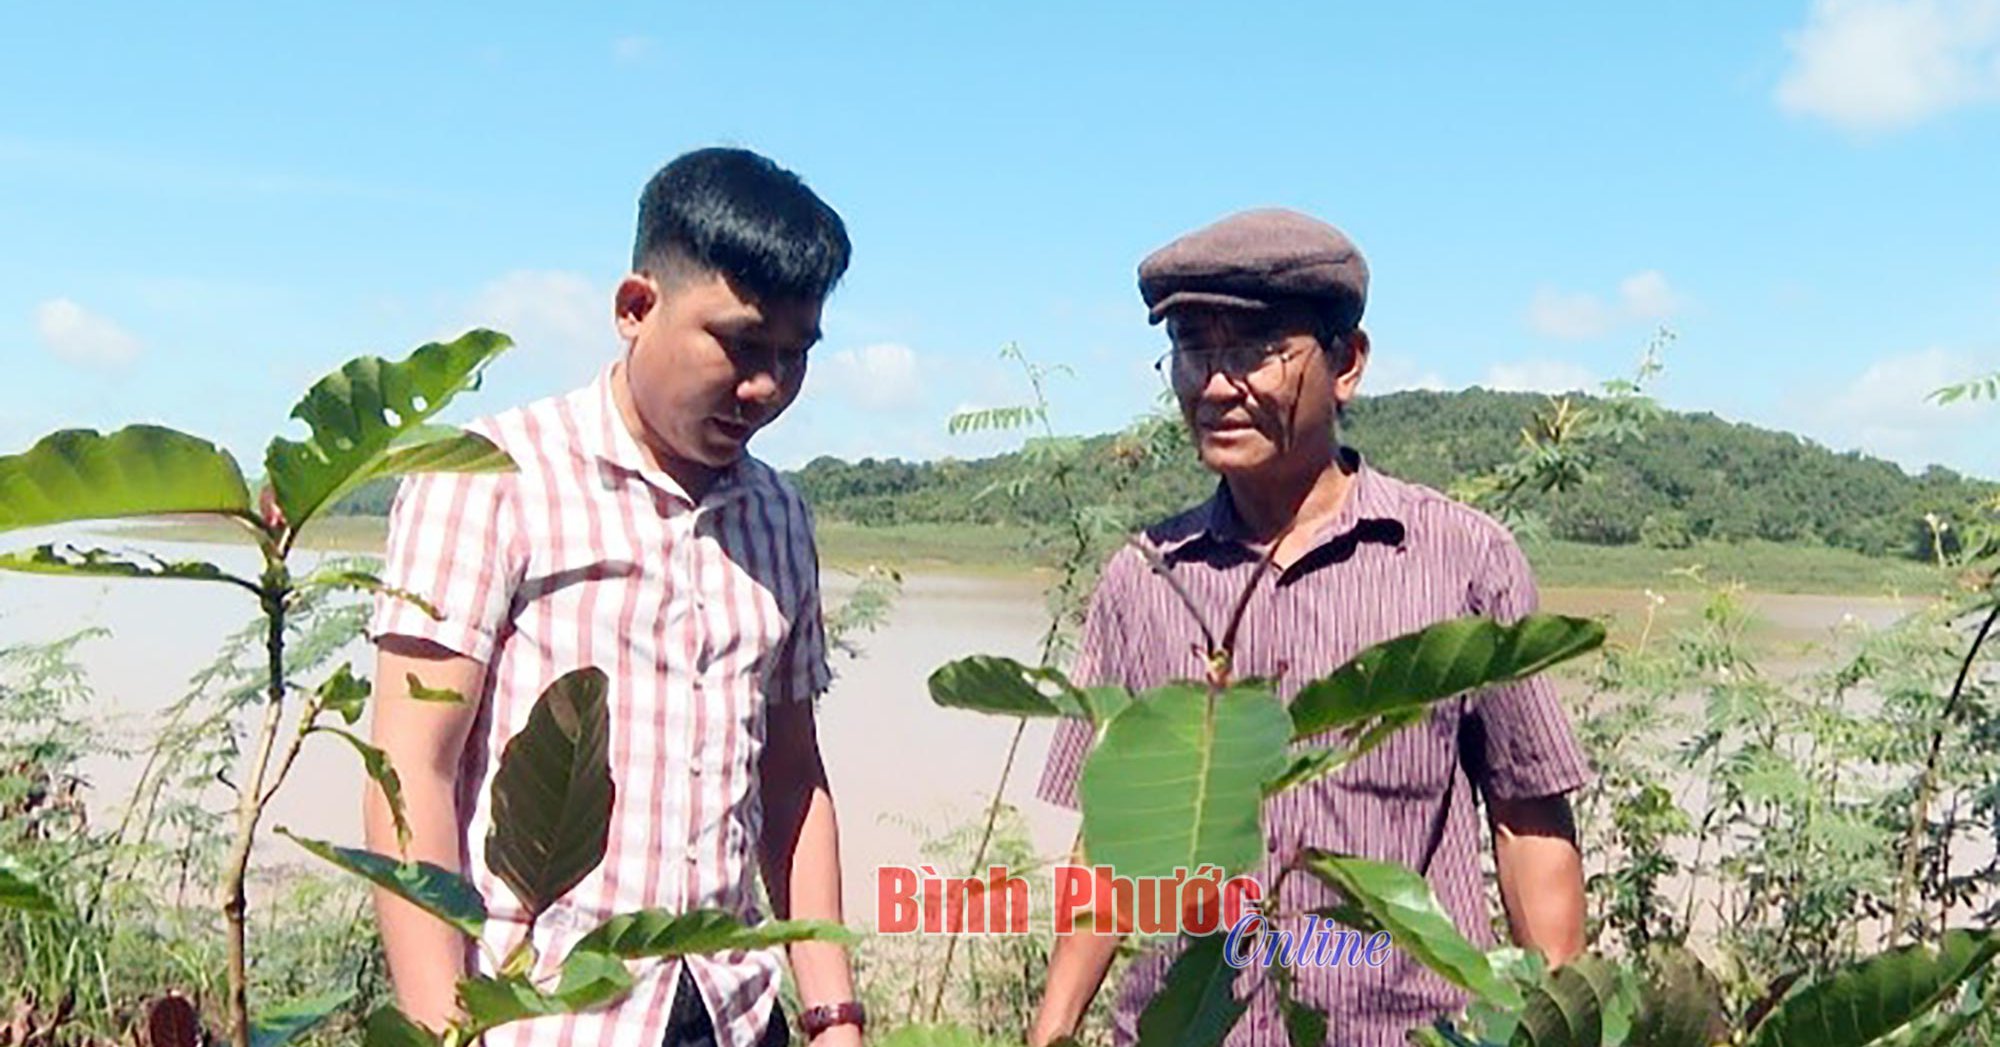 Cây gáo vàng là cây gì mà có thể dầm mình dưới nước, dân Bình Phước trồng bán gỗ đắt tiền?